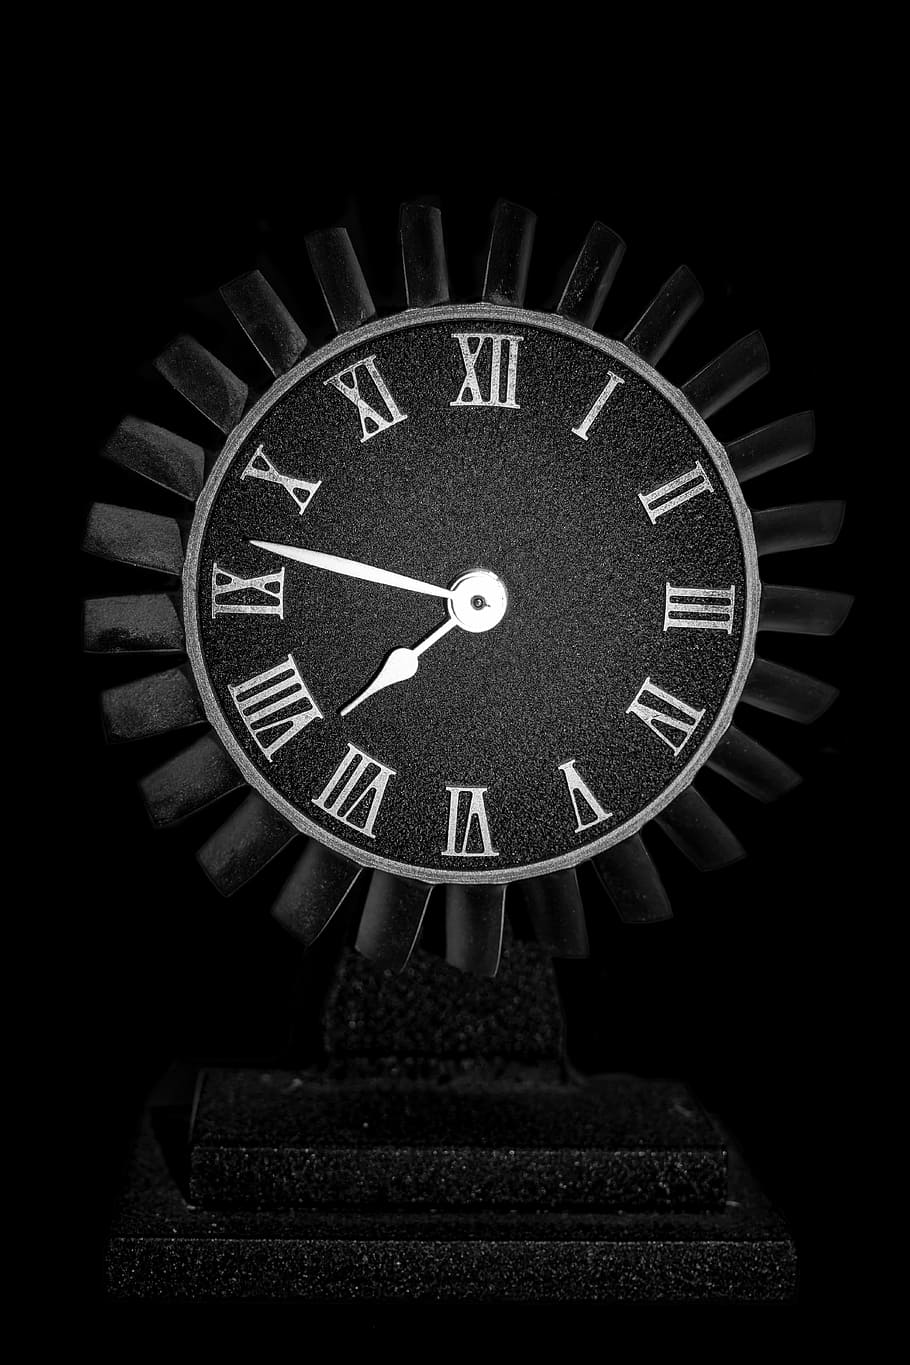 preto, branco, relógio analógico, 7:47, relógio, motor, velho, aeronave, metal, duro